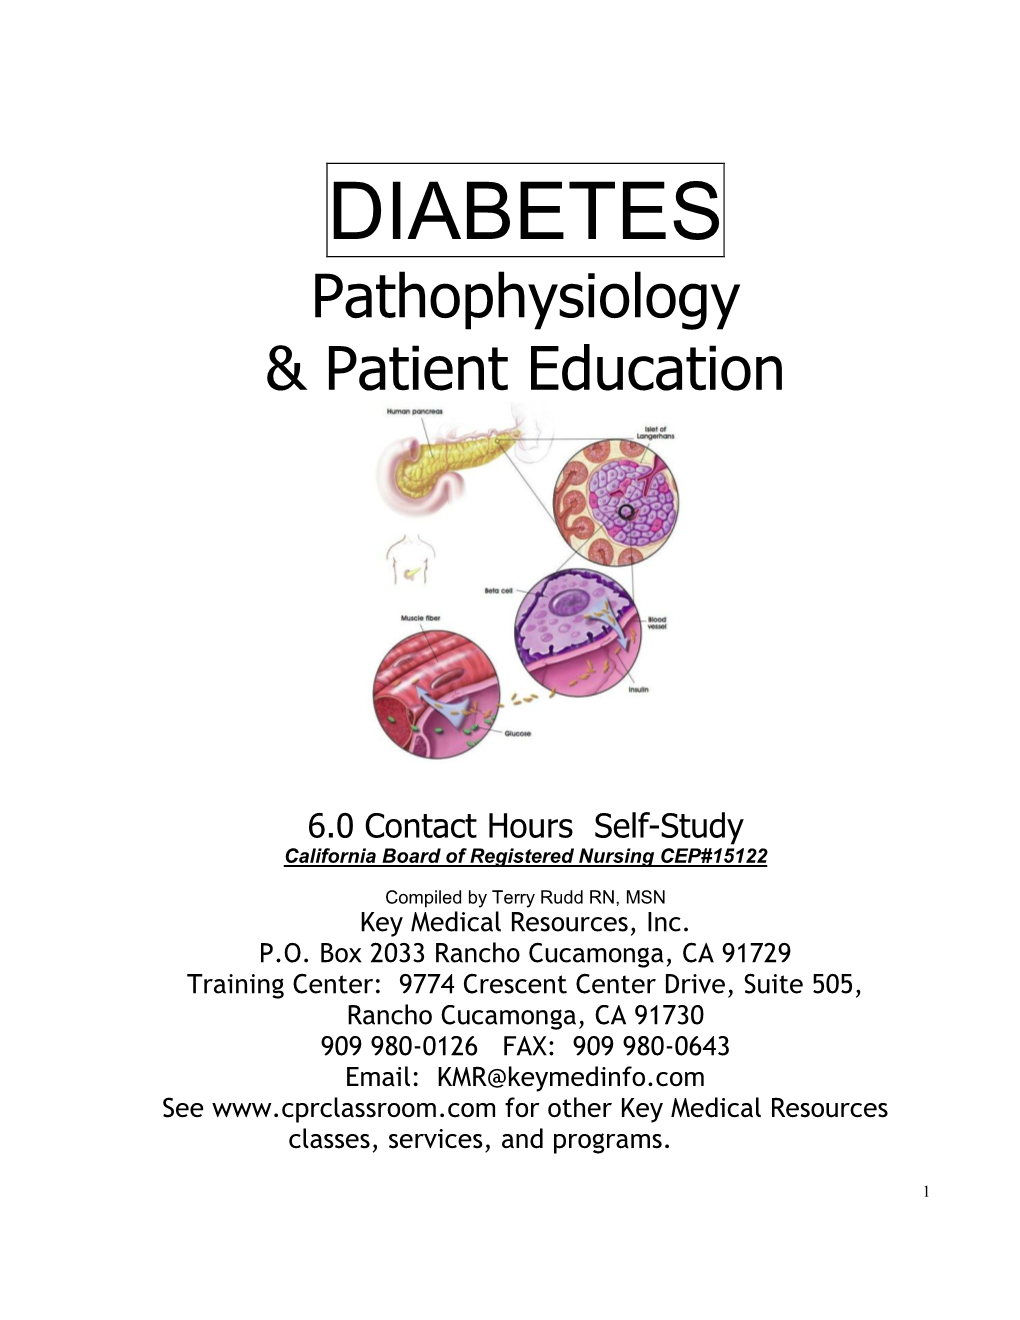 DIABETES Pathophysiology & Patient Education